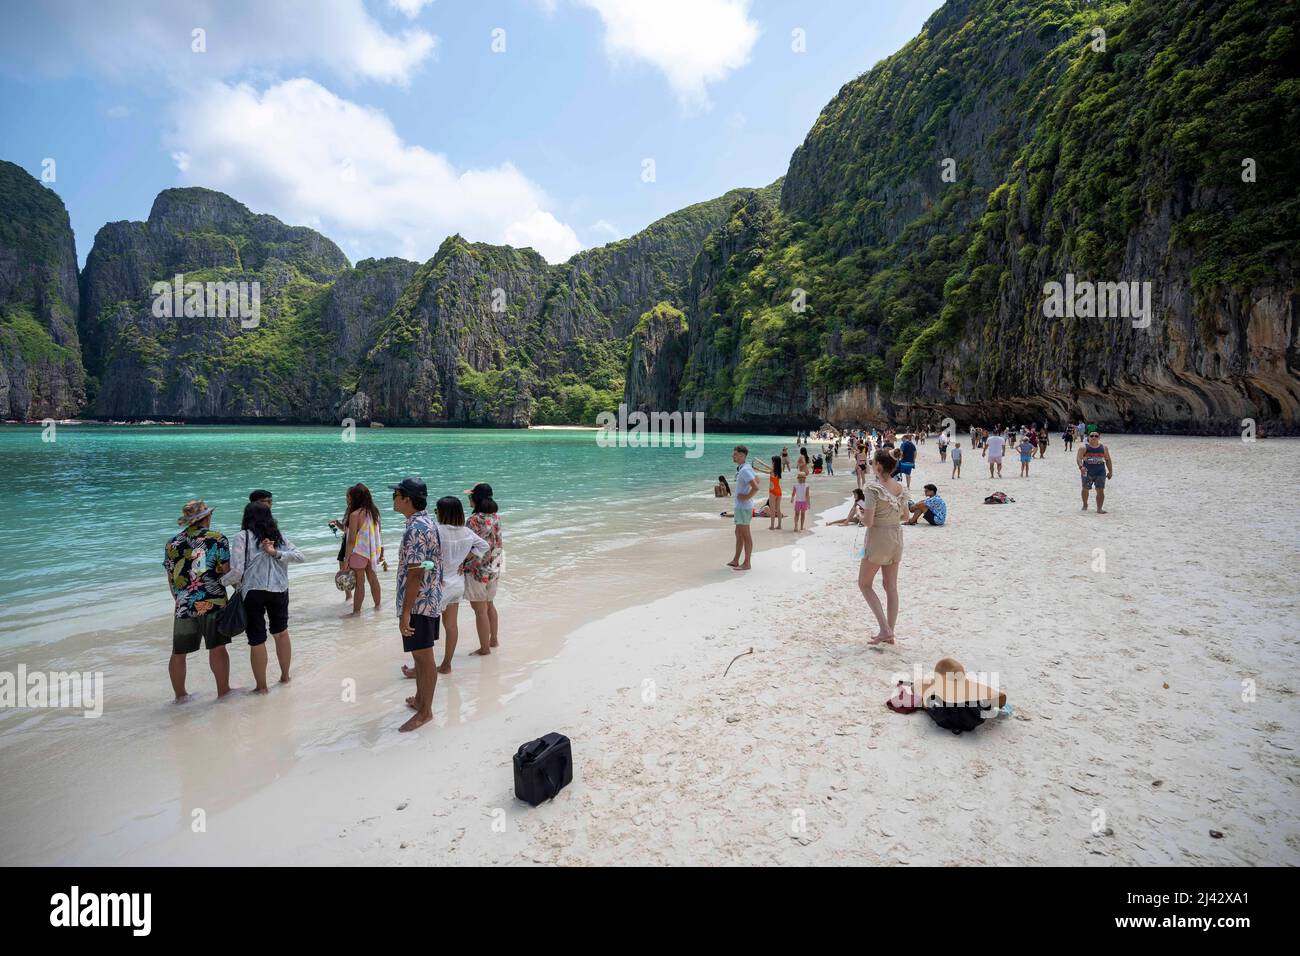 Thailand Beach Made Famous by Leonardo DiCaprio's 'The Beach